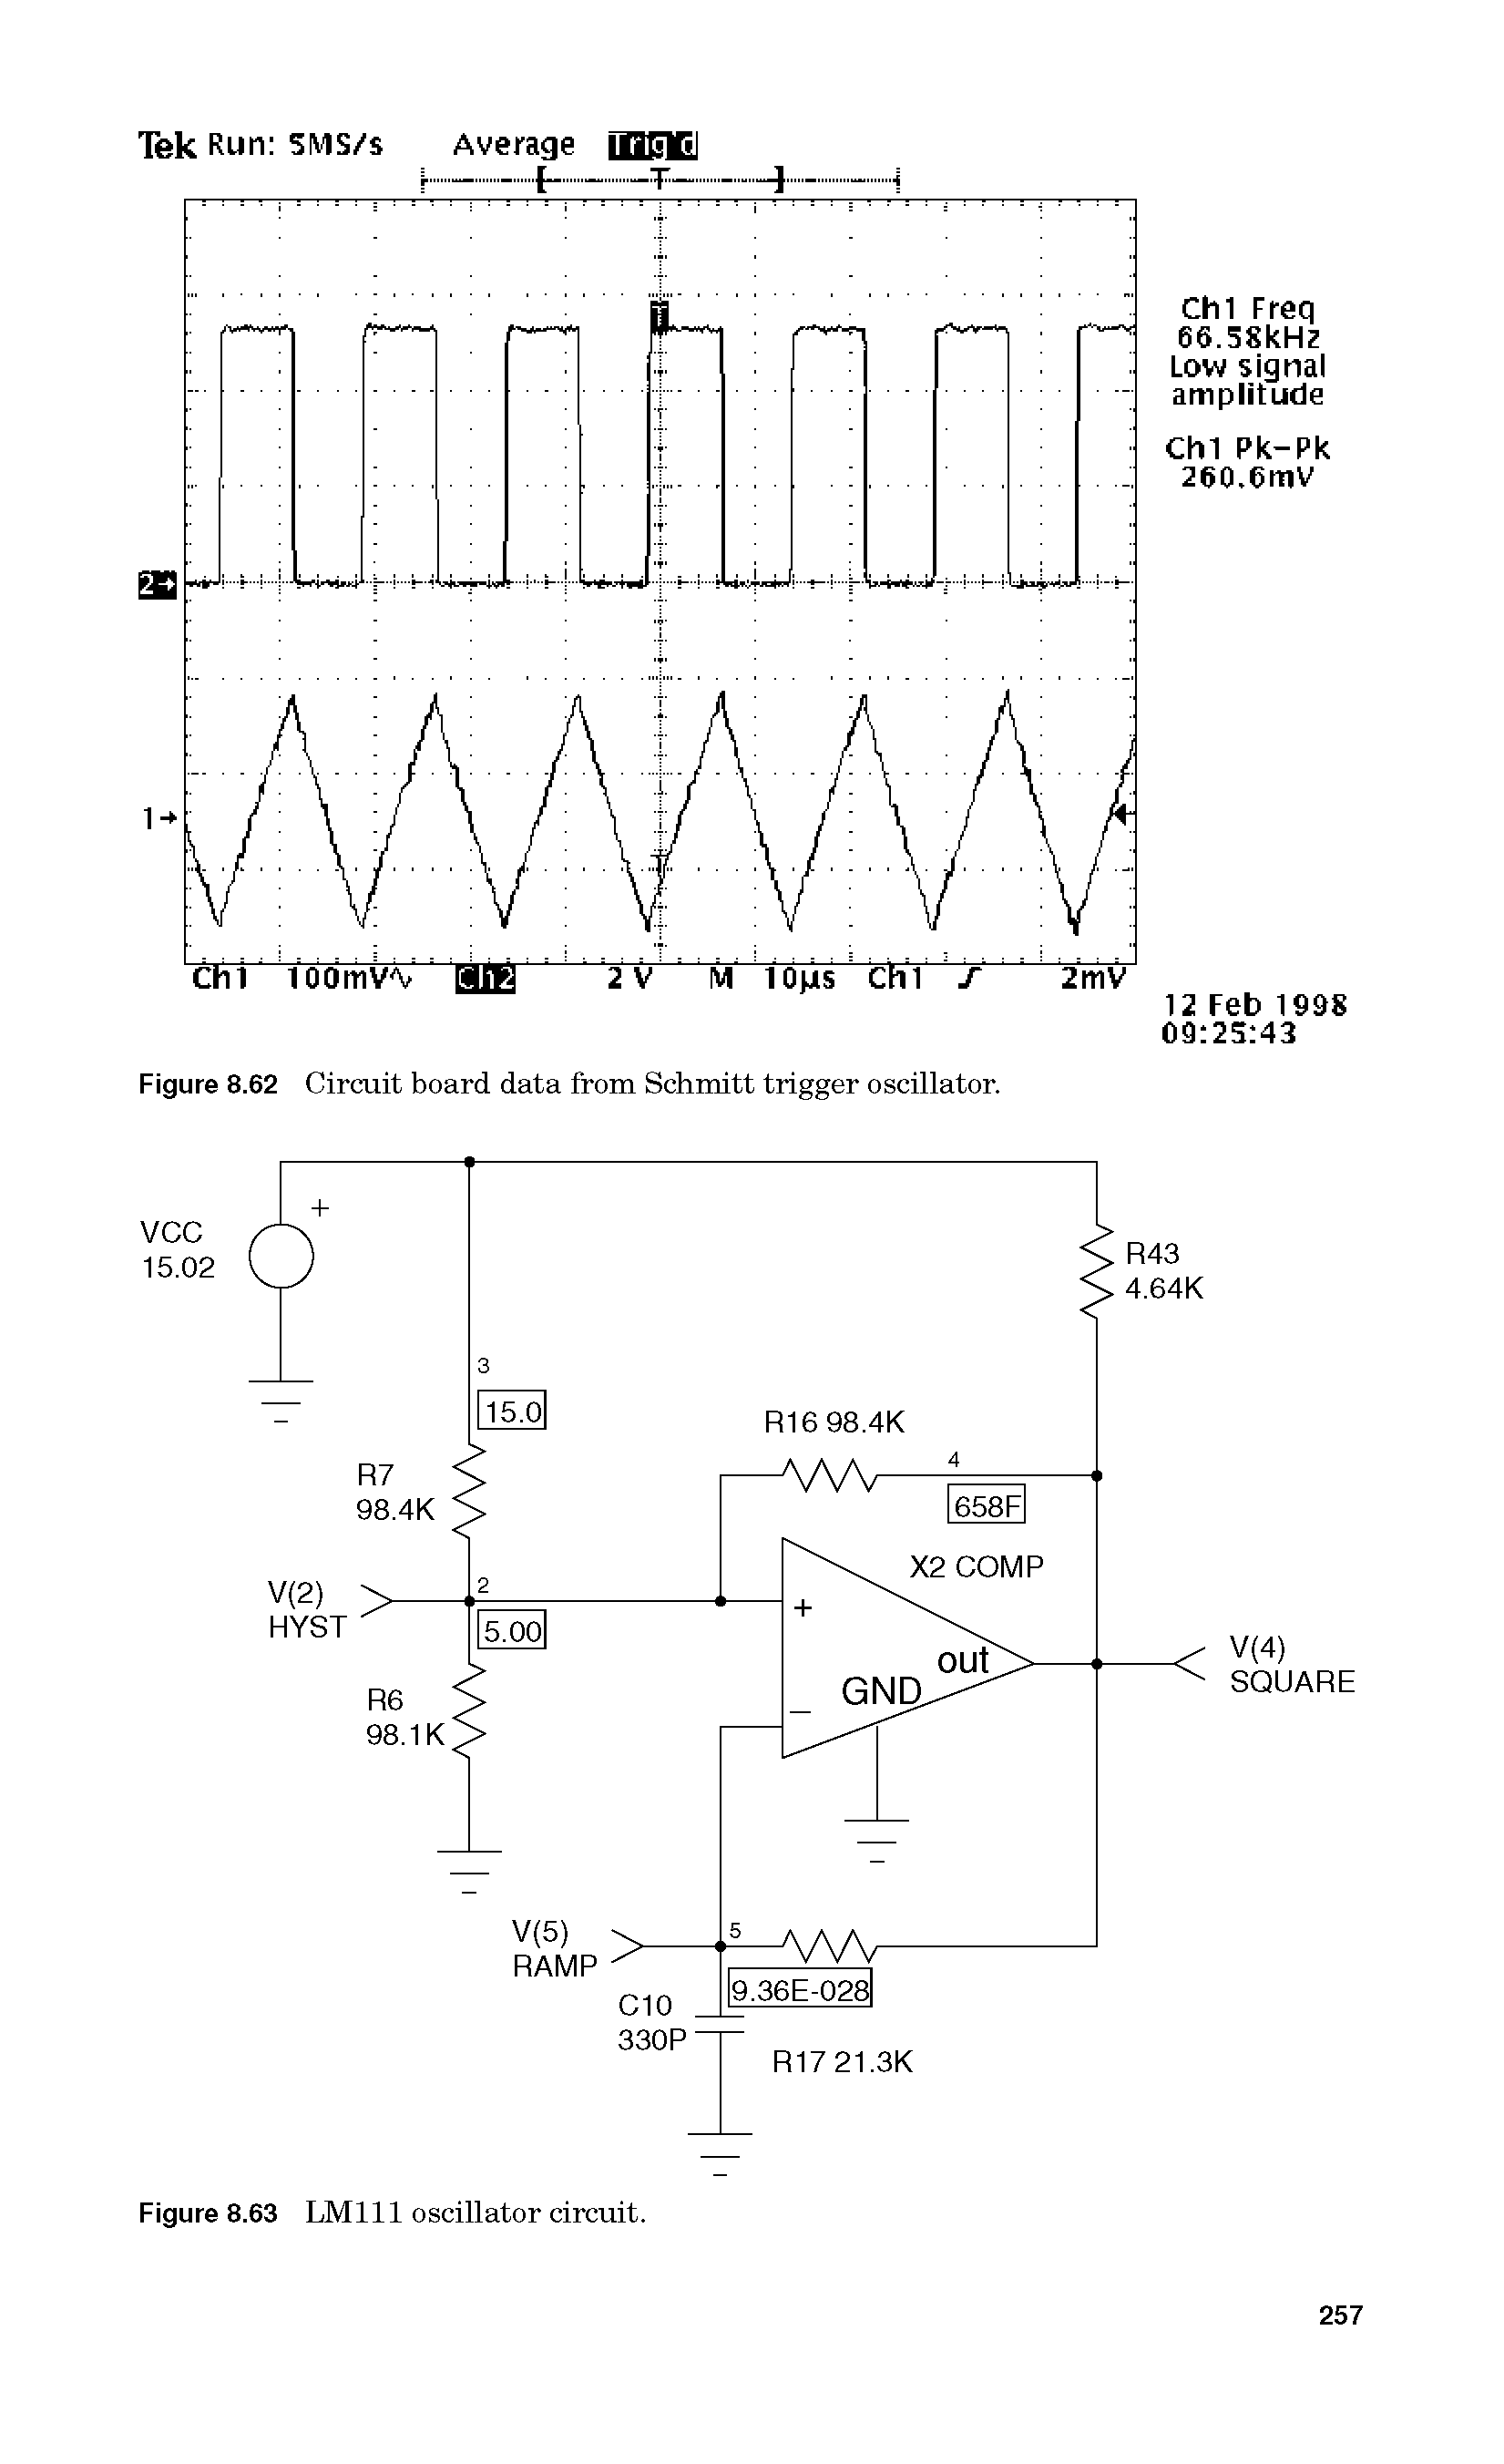 Figure 8.62 Circuit board data from Schmitt trigger oscillator.